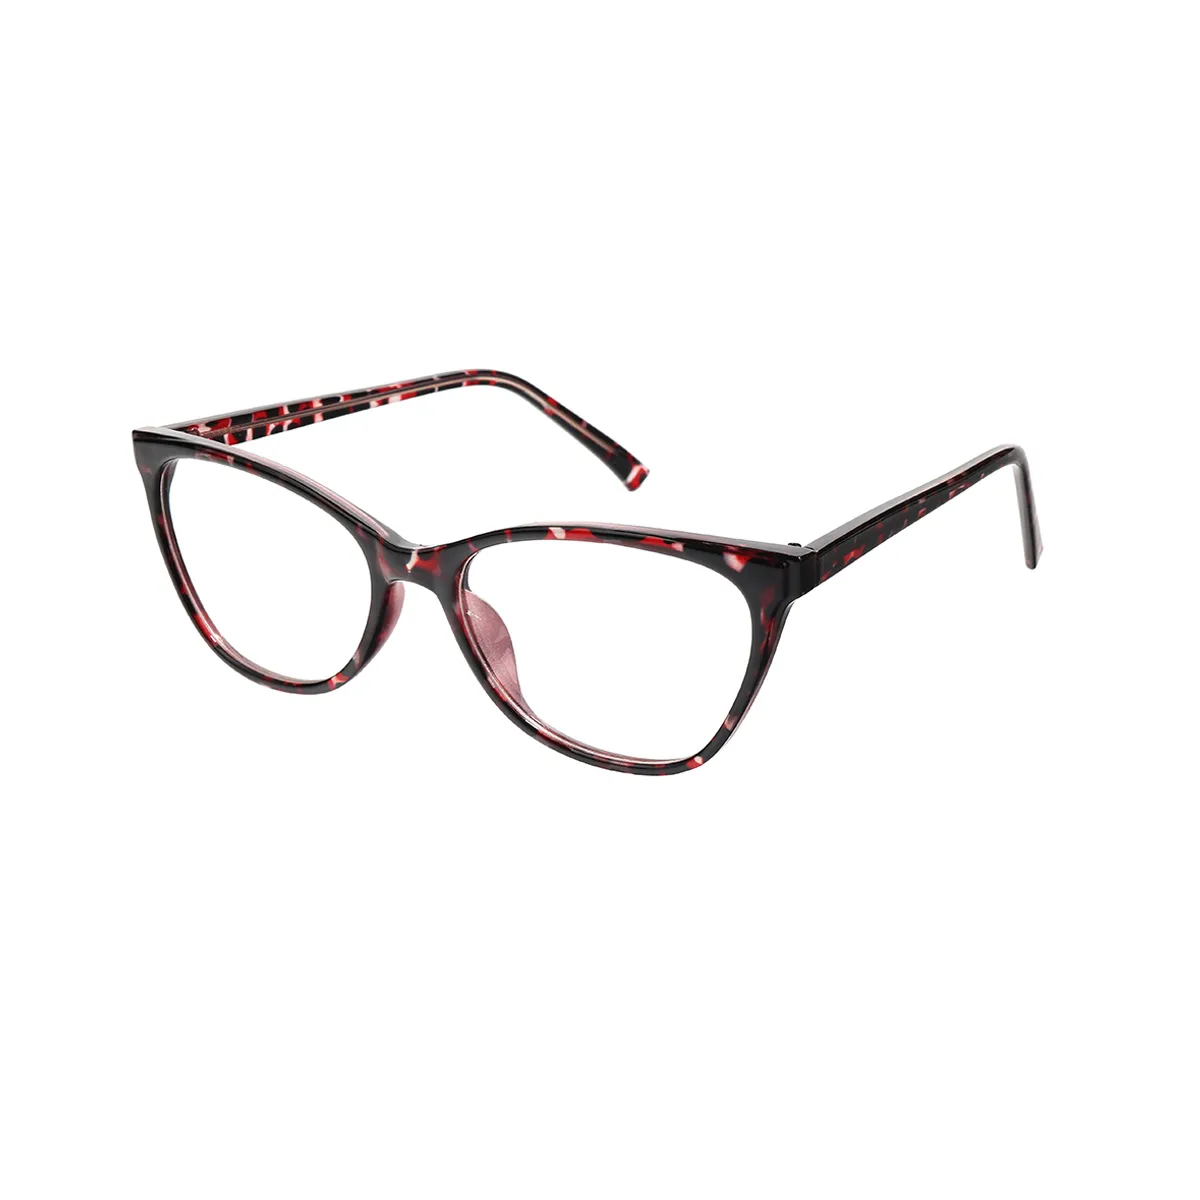 Hortensia - Cat-eye Red Glasses for Women - EFE